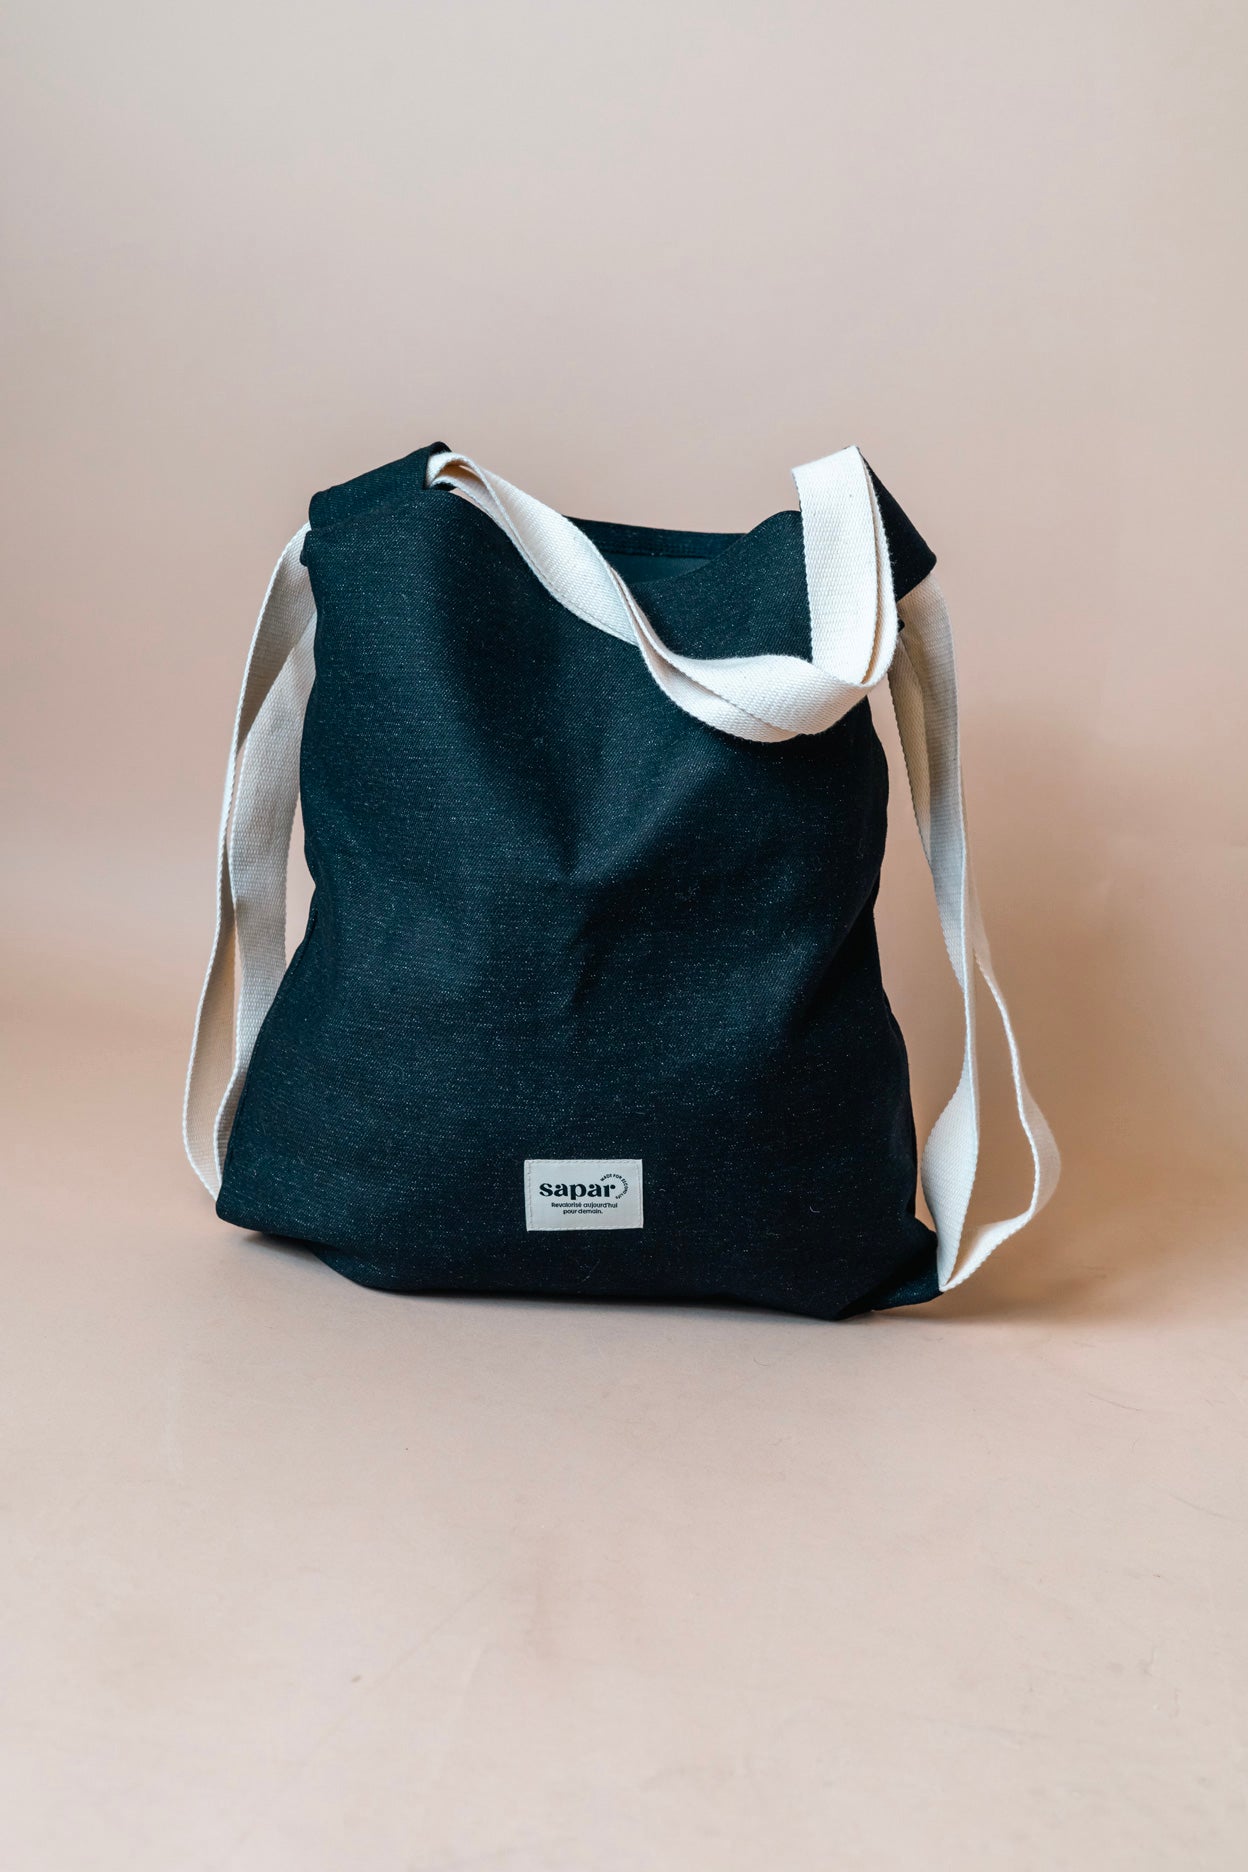 Tote-Bag upcyclé et personnalisable | écoresponsable et durable | Sapar